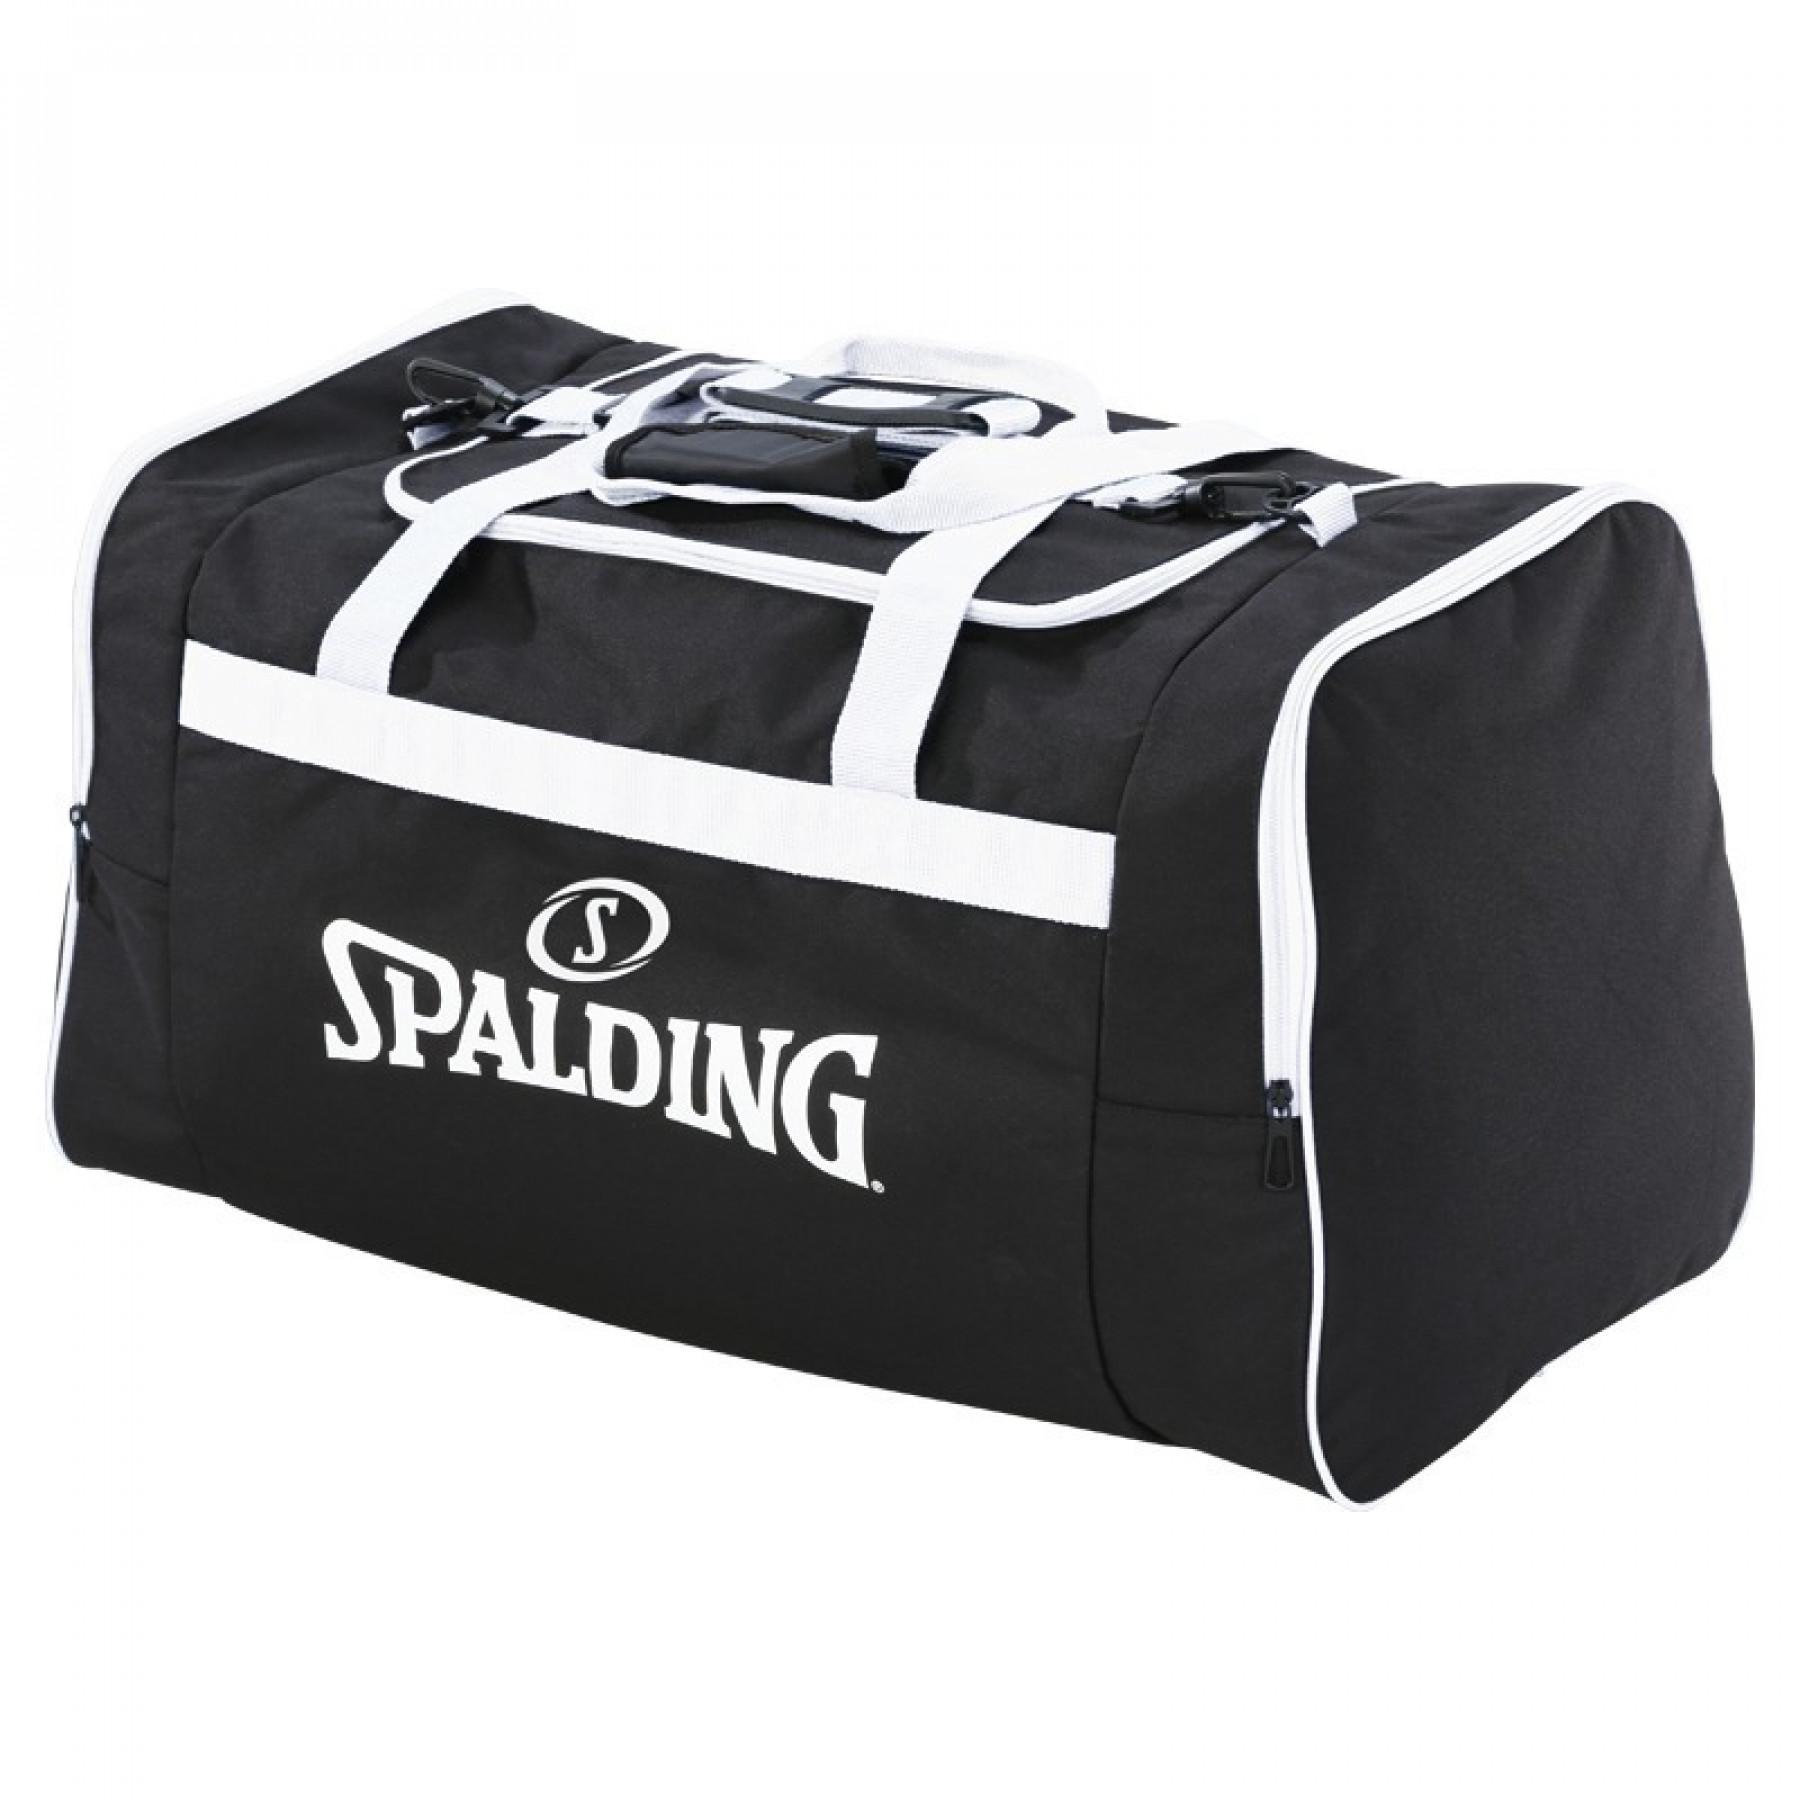 Team bag Spalding (80 litres)